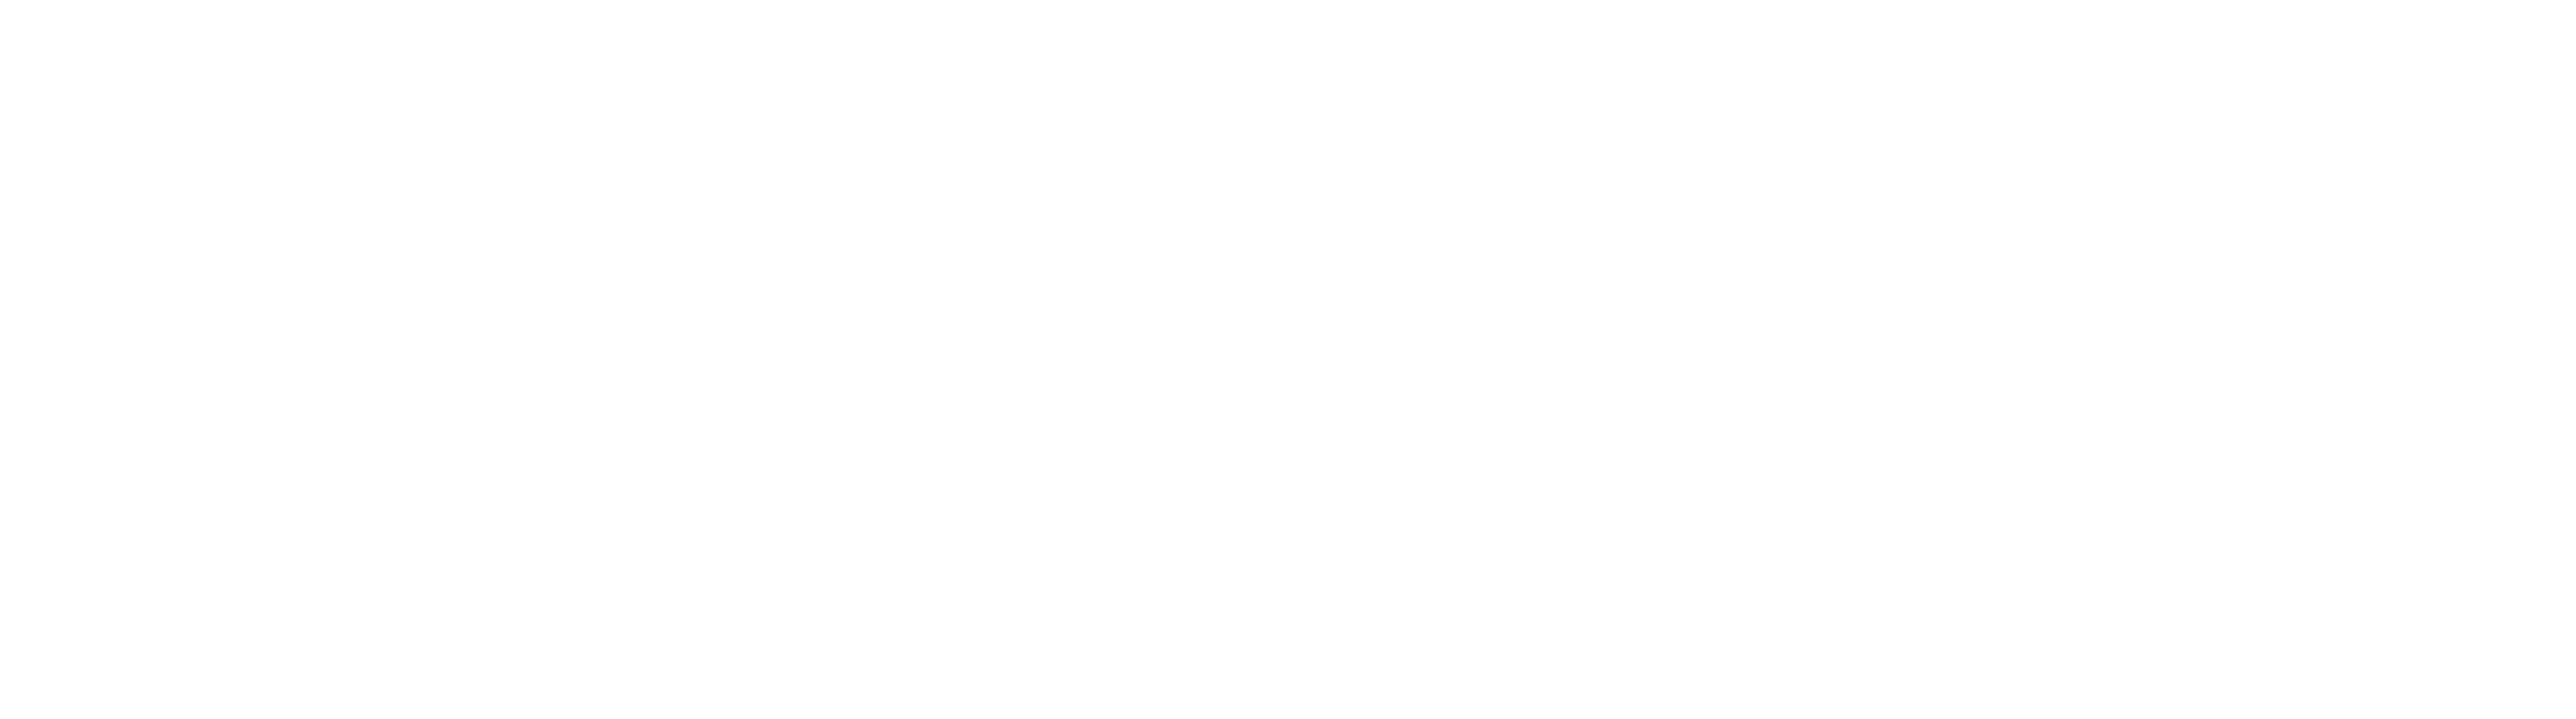 Blowfish Branding